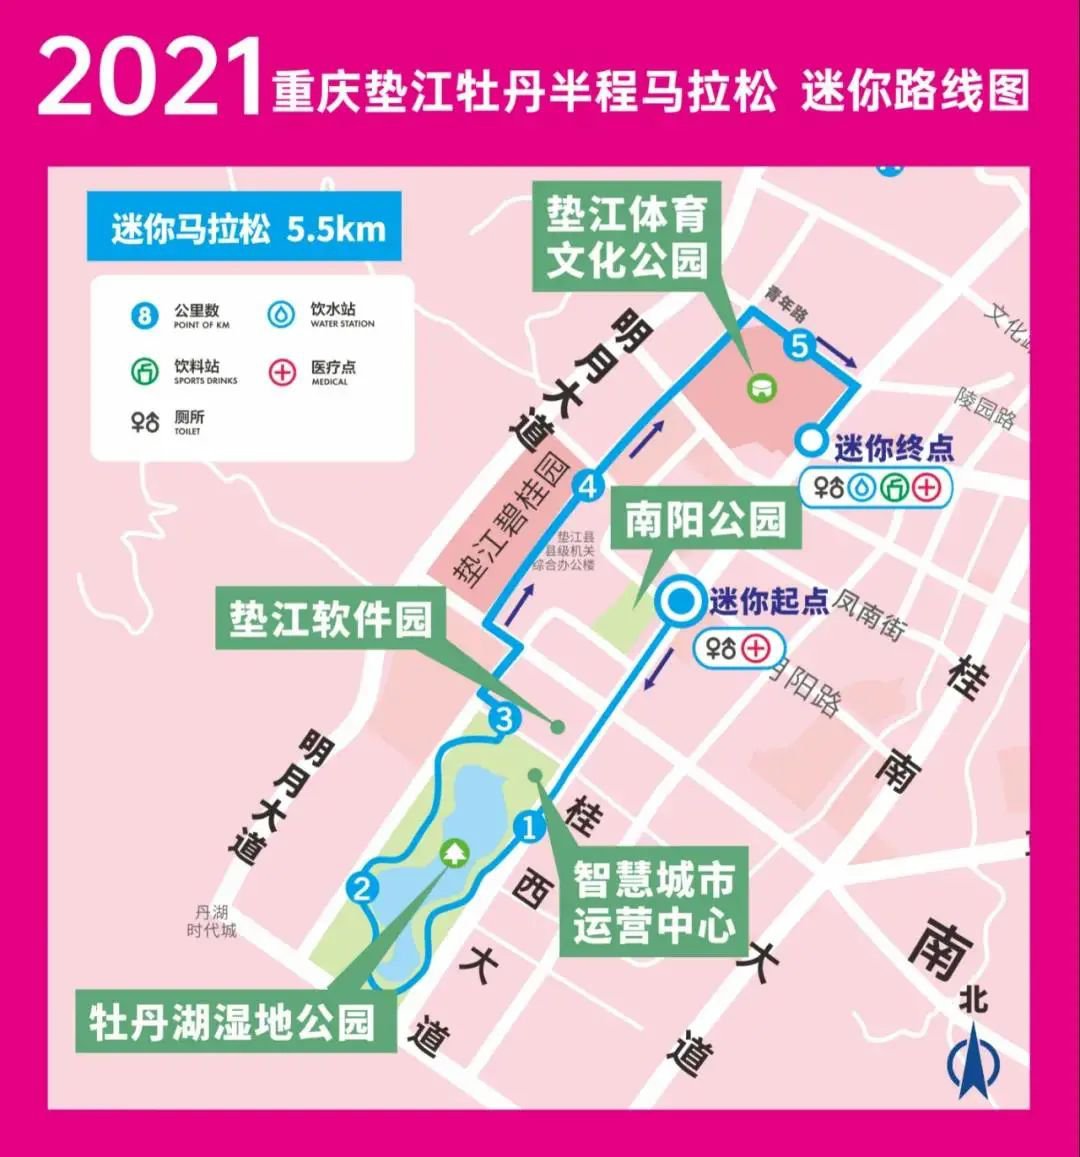 2021重庆垫江牡丹半程马拉松直播时间 入口